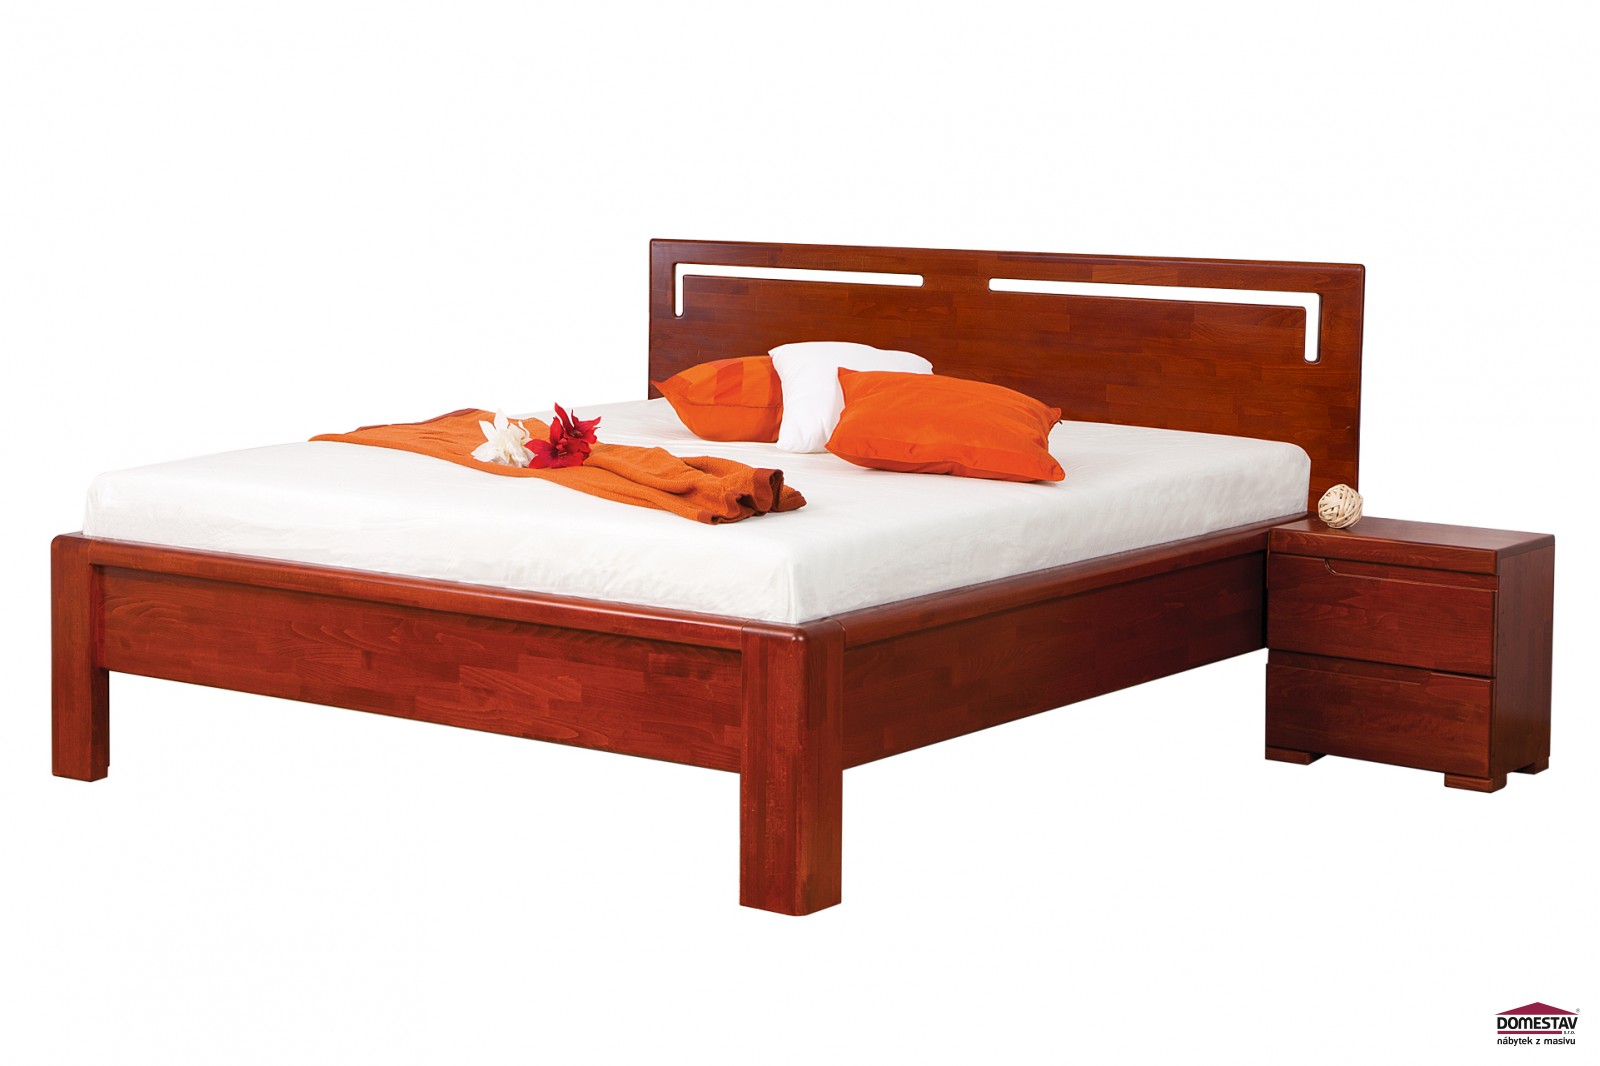 Domestav FLORENCIA manželská postel čelo rovné s výřezy L 180 cm buk cink mořený